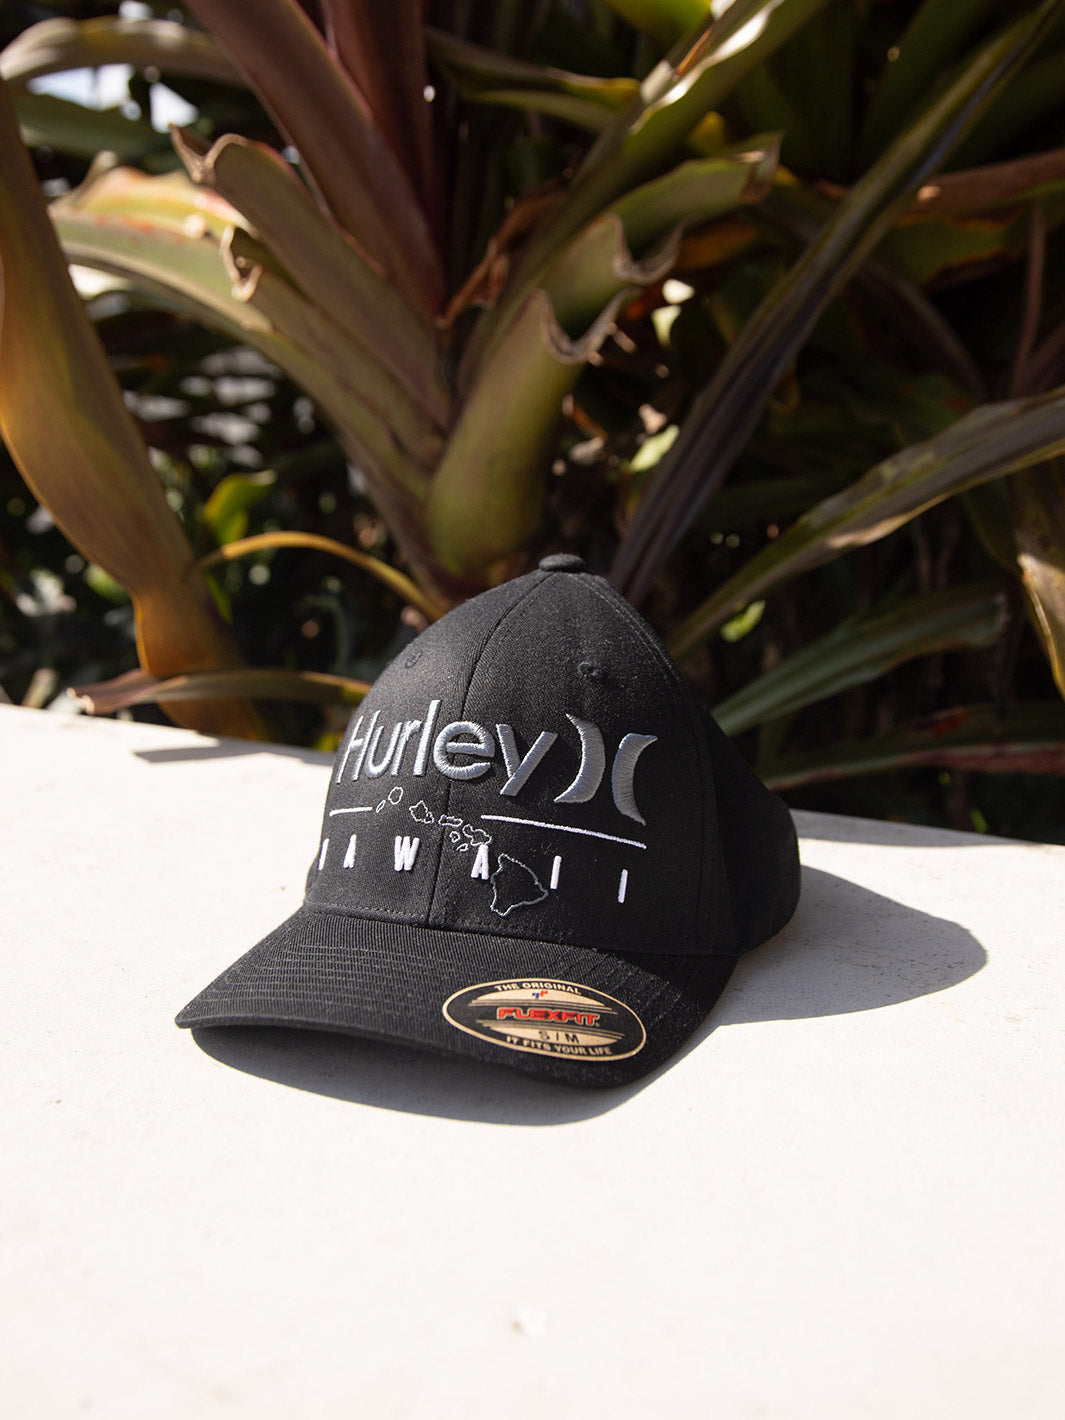 HURLEY HAWAII OUTLINE FLEX FIT HAT - BLACK